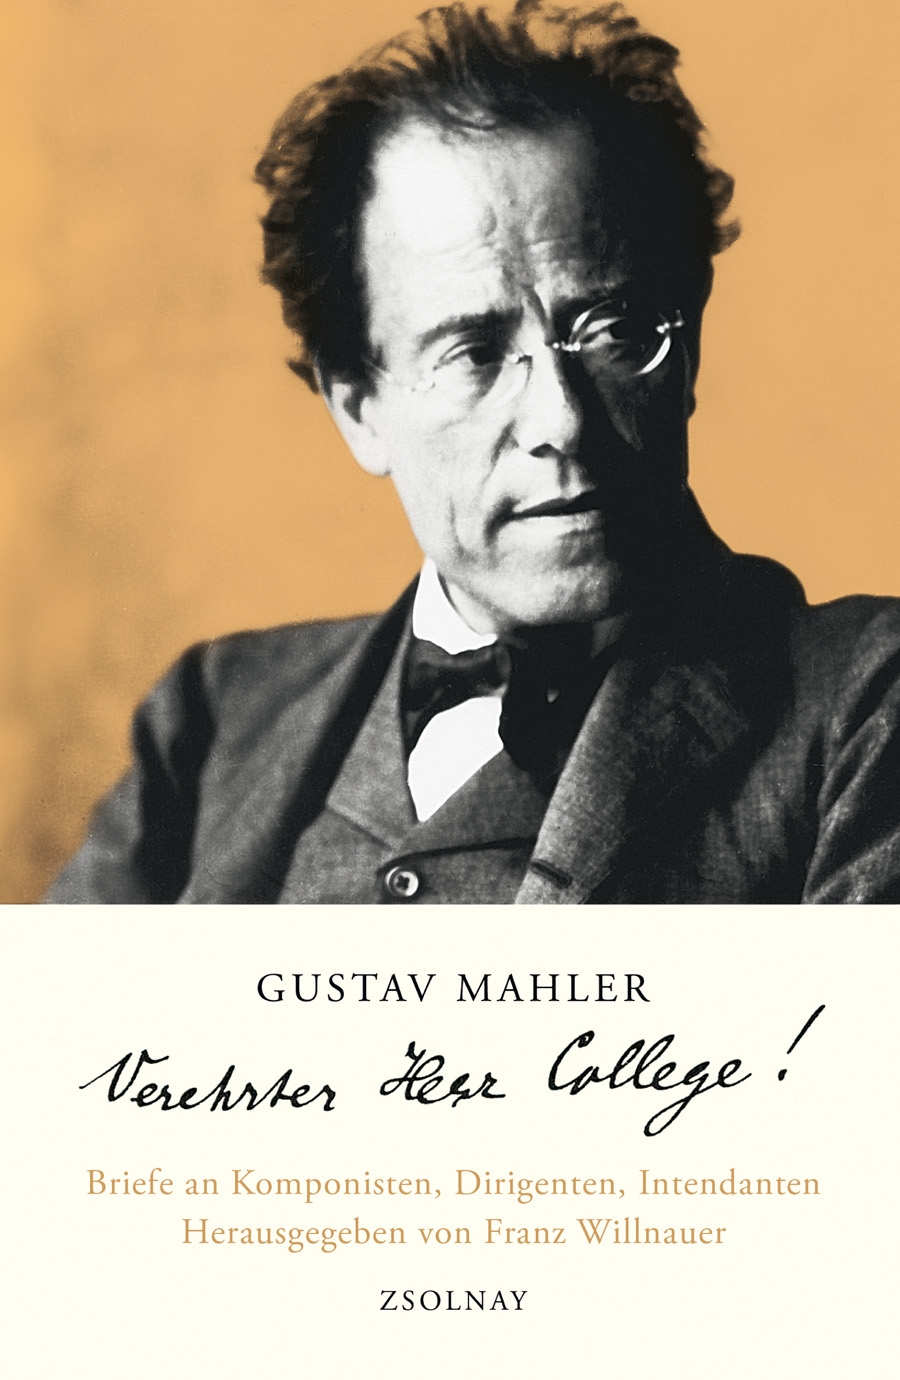 Gustav Mahler Verehrter Herr College!